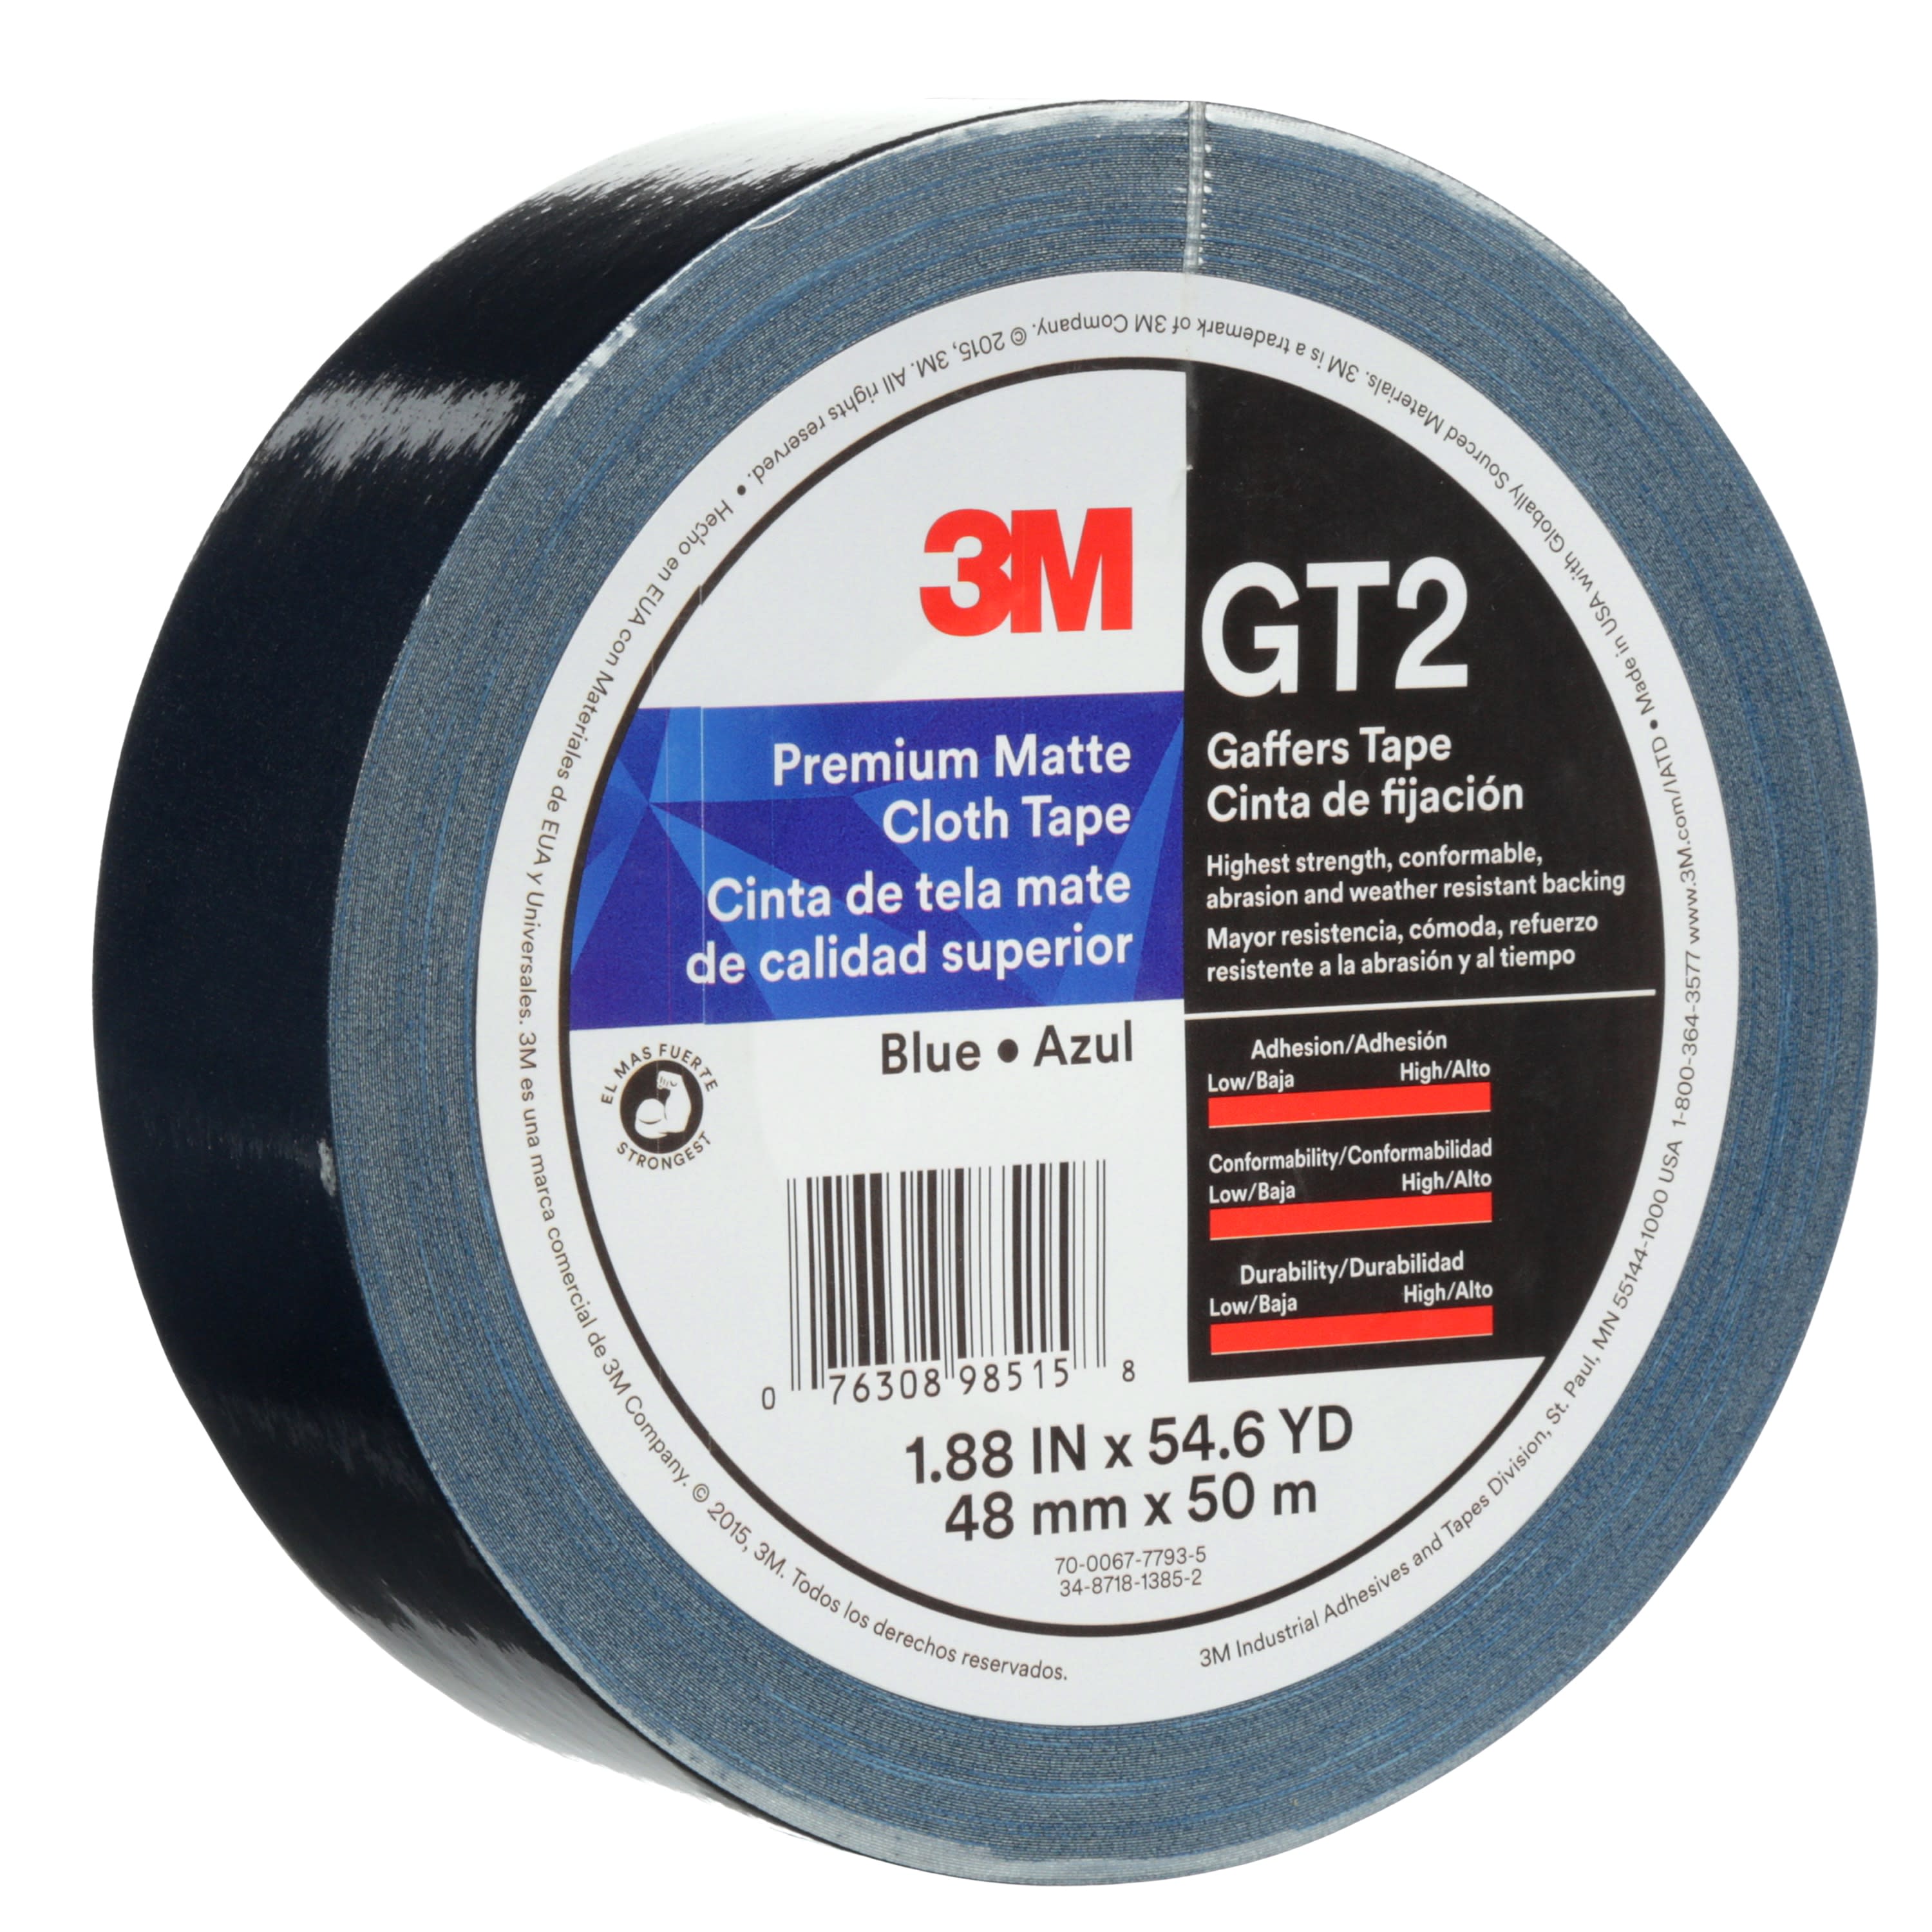 3M™ Premium Matte Cloth (Gaffers) Tape GT2, Blue, 48 mm x 50 m, 11 mil,
24 per case